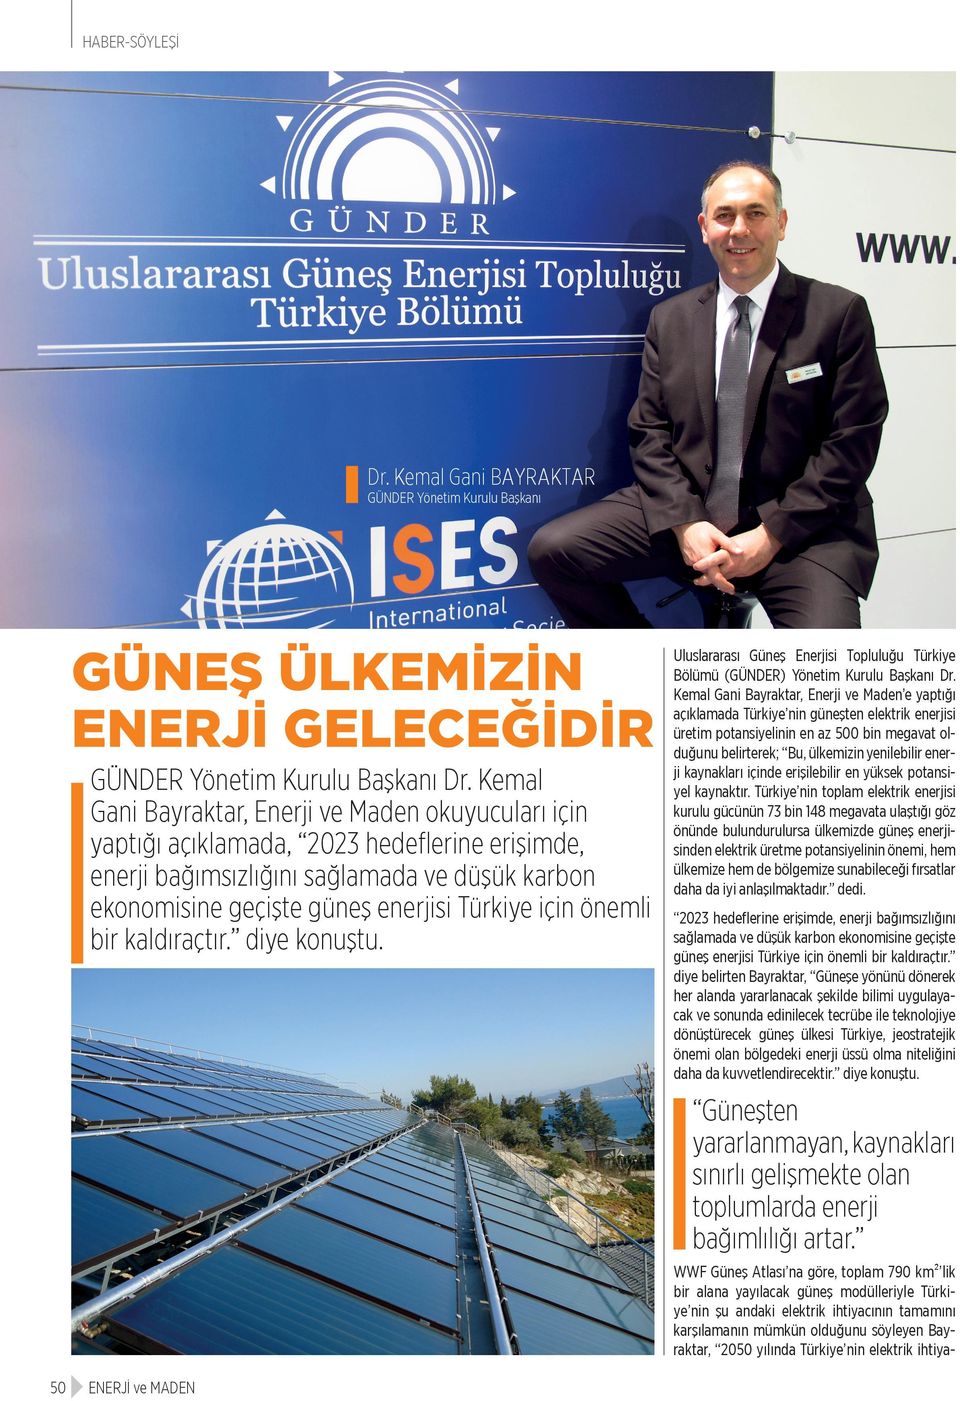 önemli bir kaldıraçtır. diye konuştu. Uluslararası Güneş Enerjisi Topluluğu Türkiye Bölümü (GÜNDER) Yönetim Kurulu Başkanı Dr.